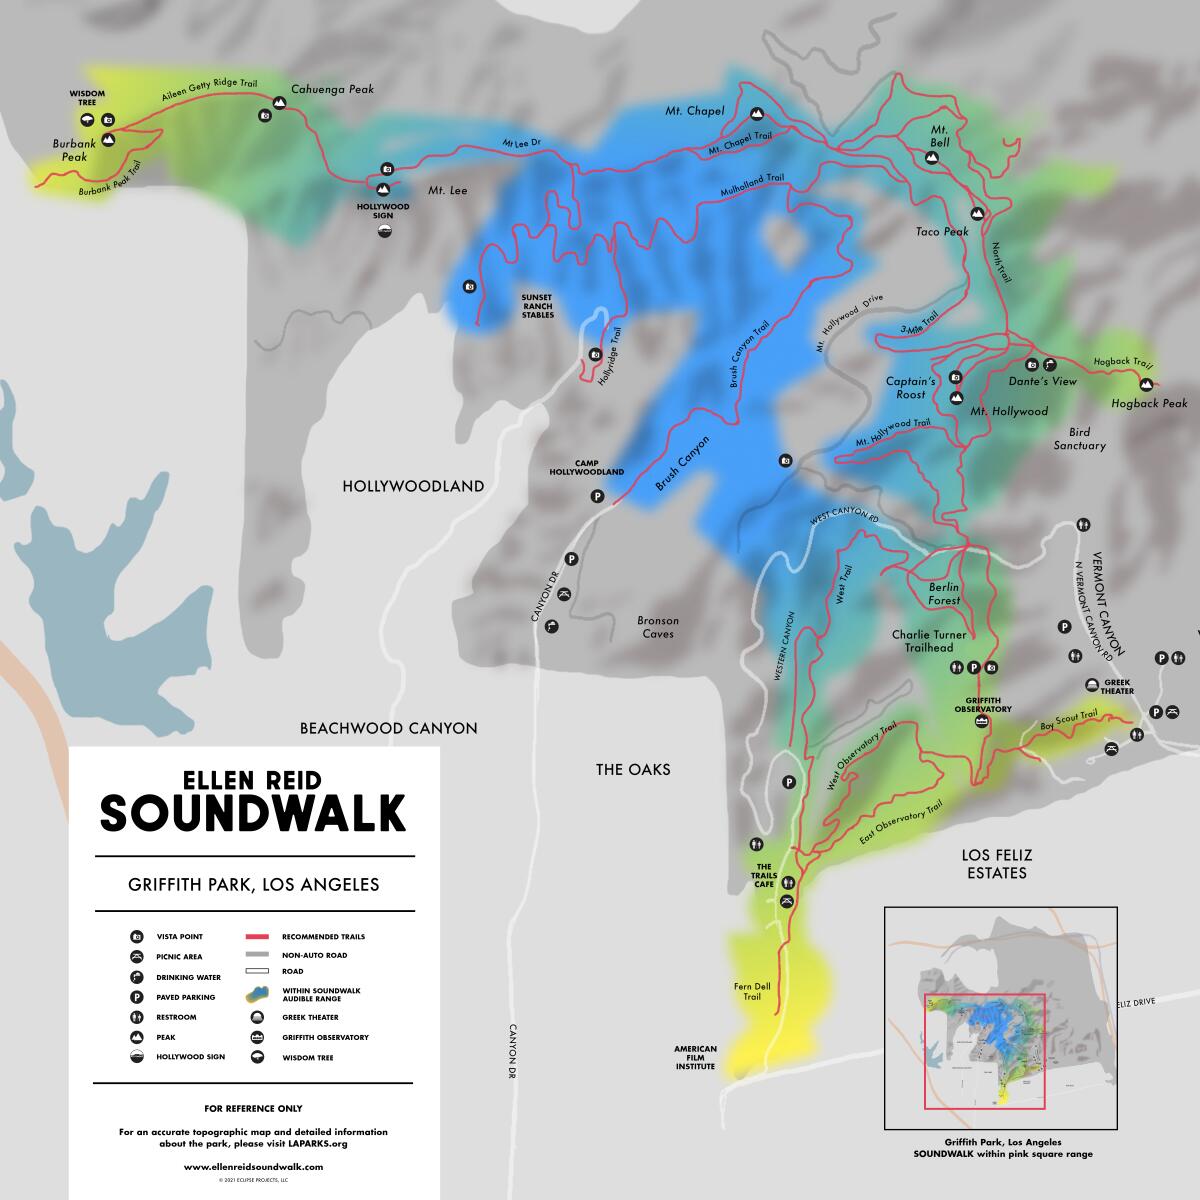 A map shows Griffith Park with an "Ellen Reid Soundwalk" key.